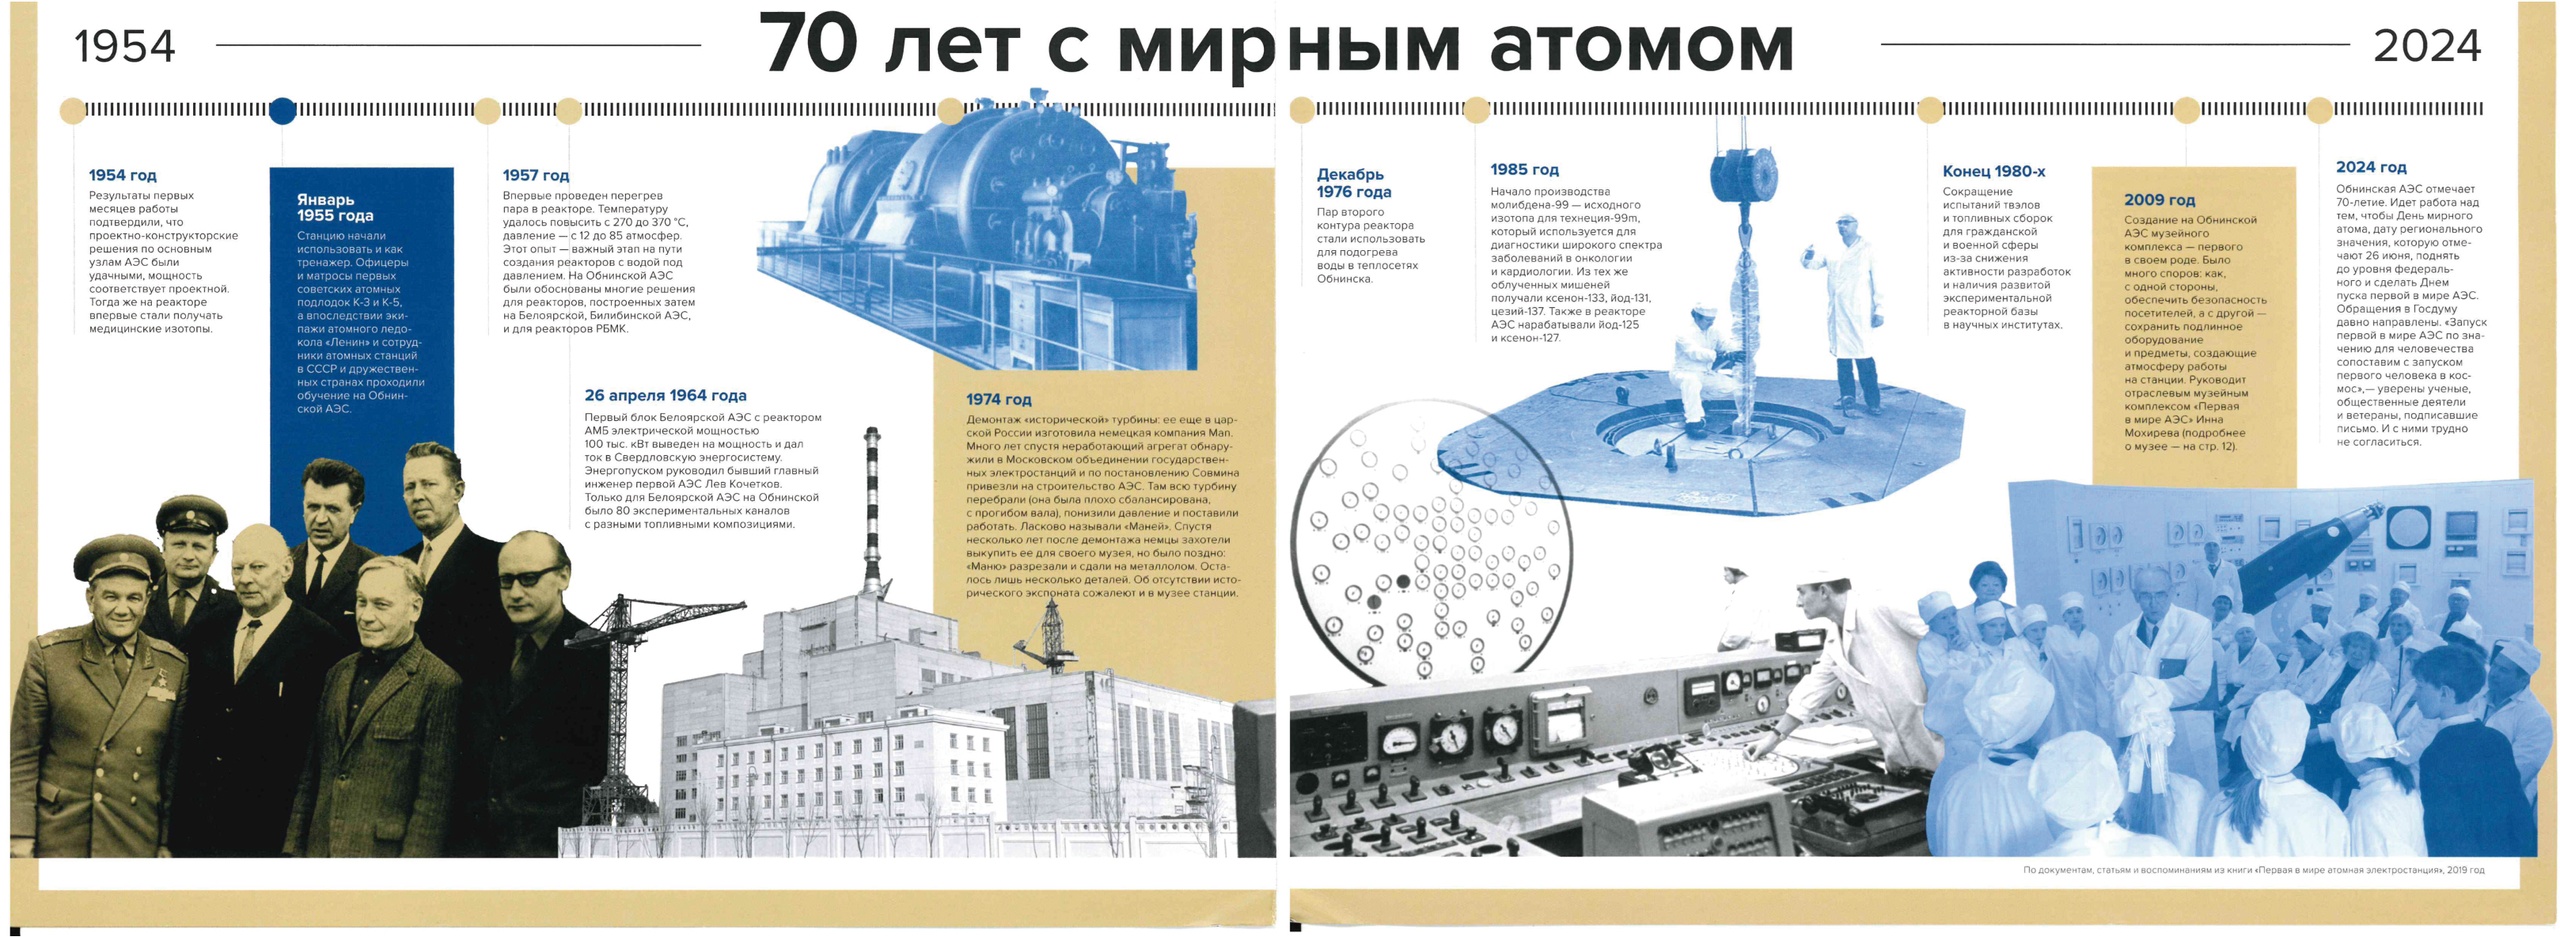 Сегодня в Обнинске отмечают 70 лет со дня запуска первой в мире АЭС.